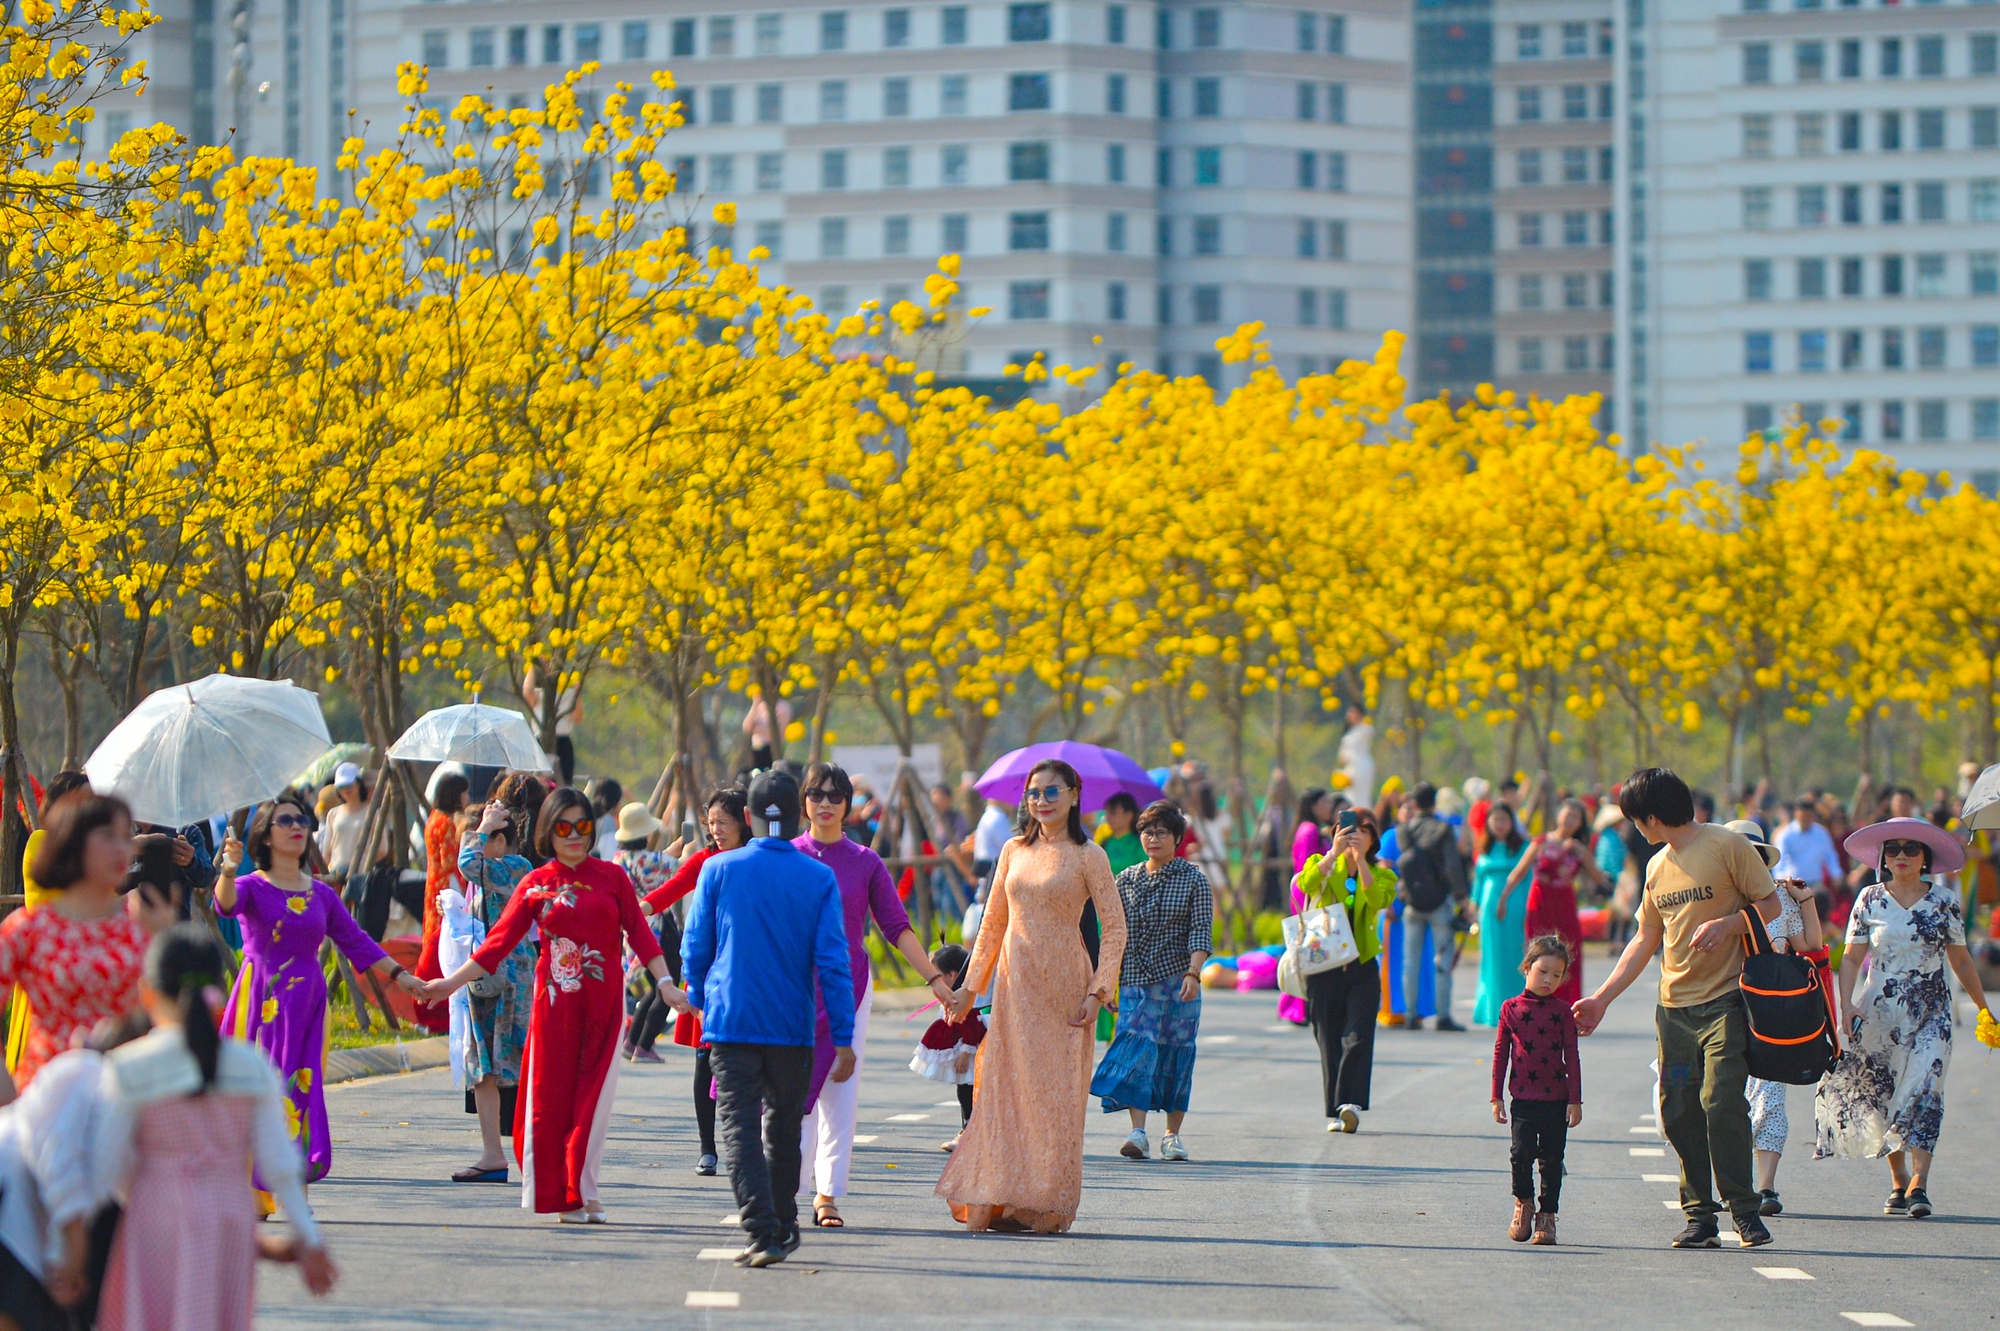 'Biển người' chen chân chụp ảnh tại con đường hoa vàng hot nhất Hà Nội - Ảnh 3.